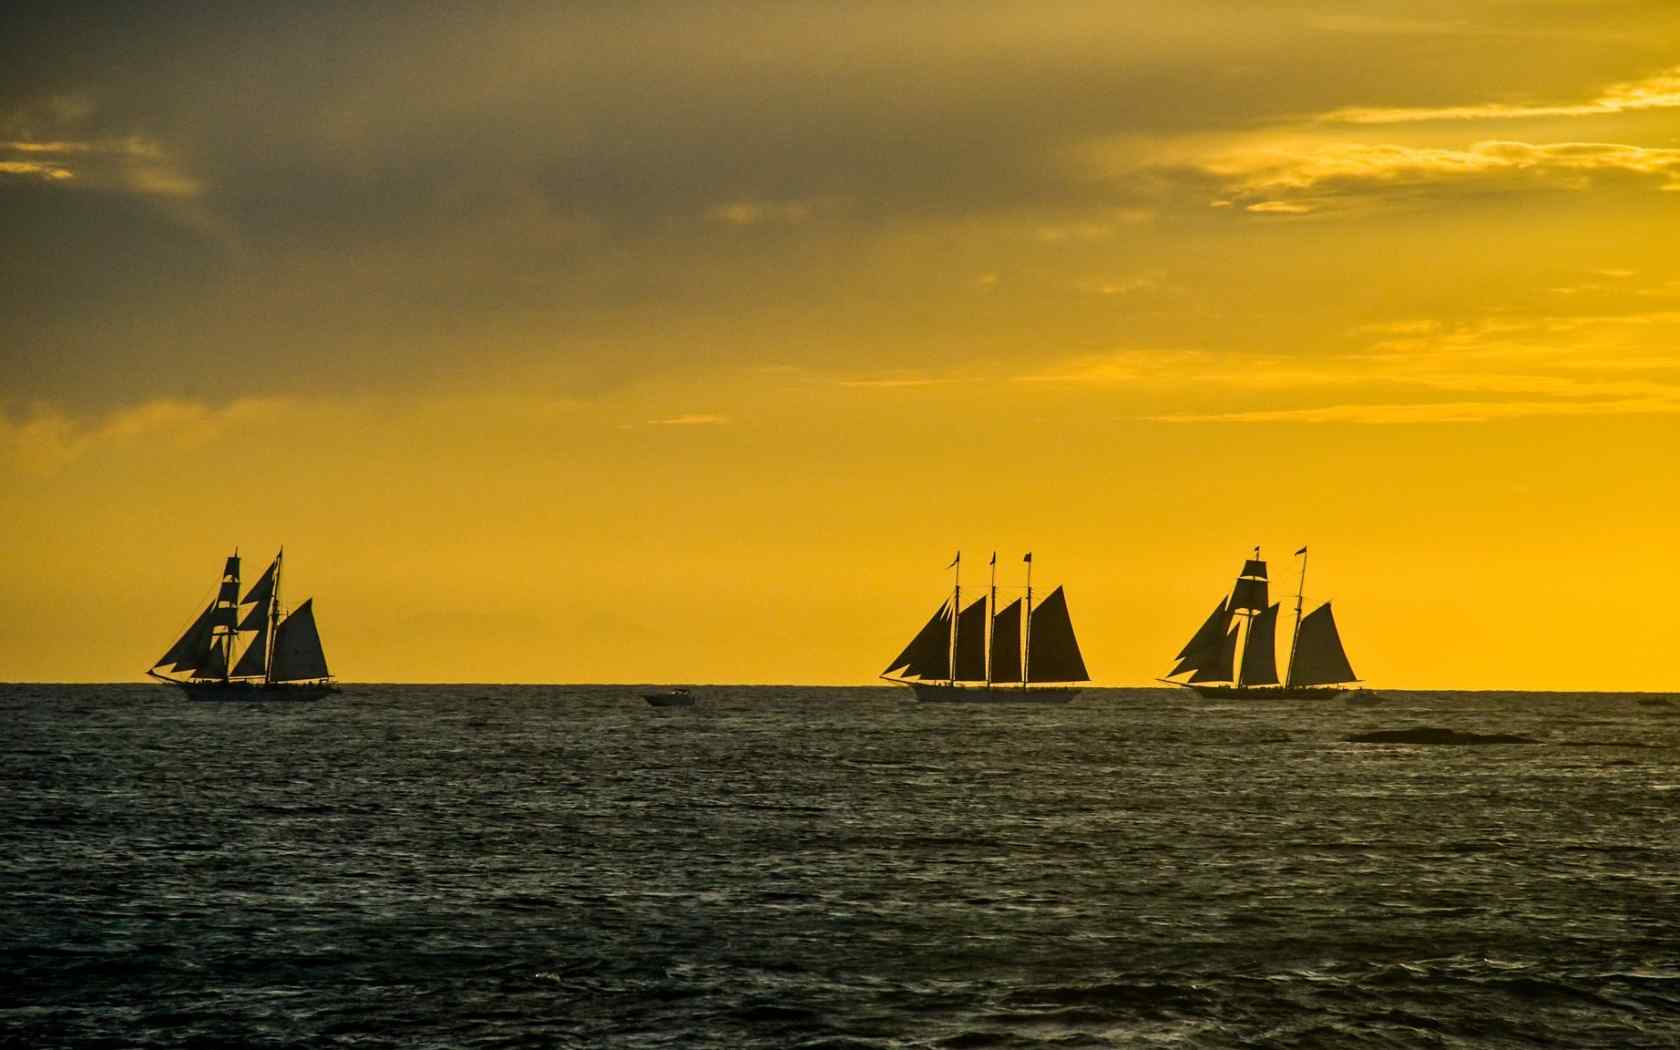 海面上的帆船唯美夕阳风景图片电脑桌面壁纸